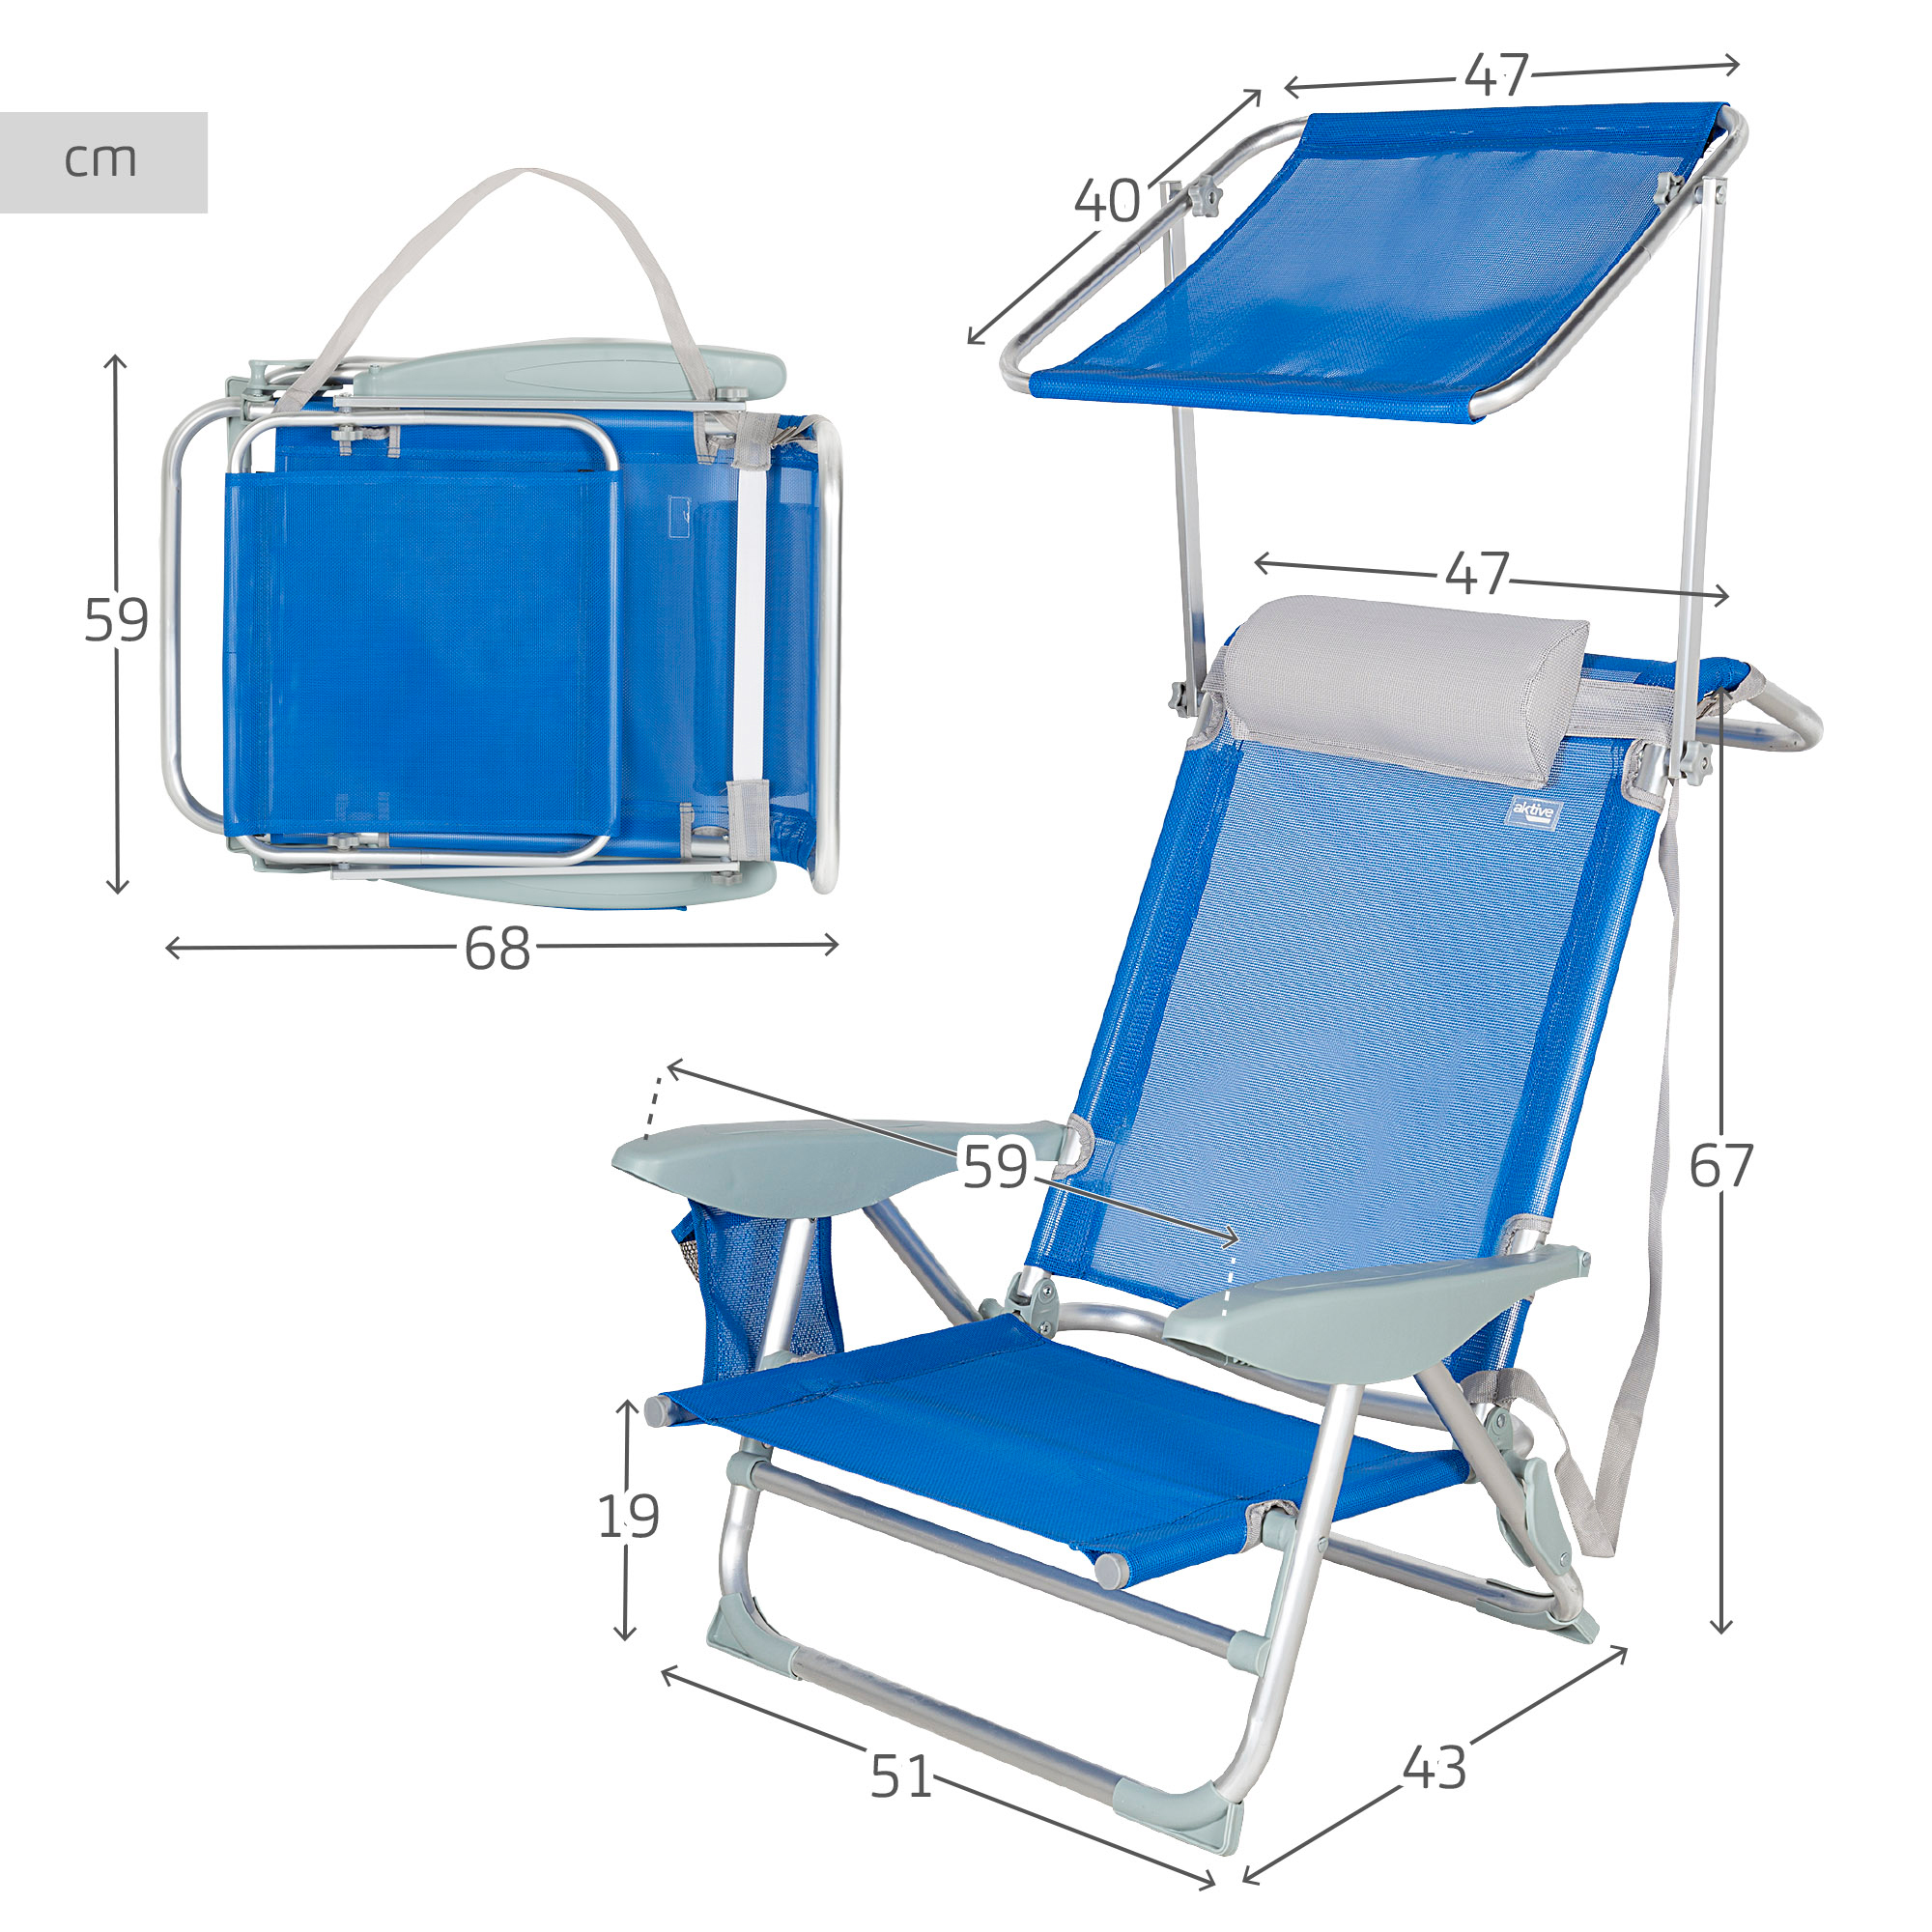 Cadeira De Praia Com Guarda-chuva, Almofada E Bolso Aktive Azul